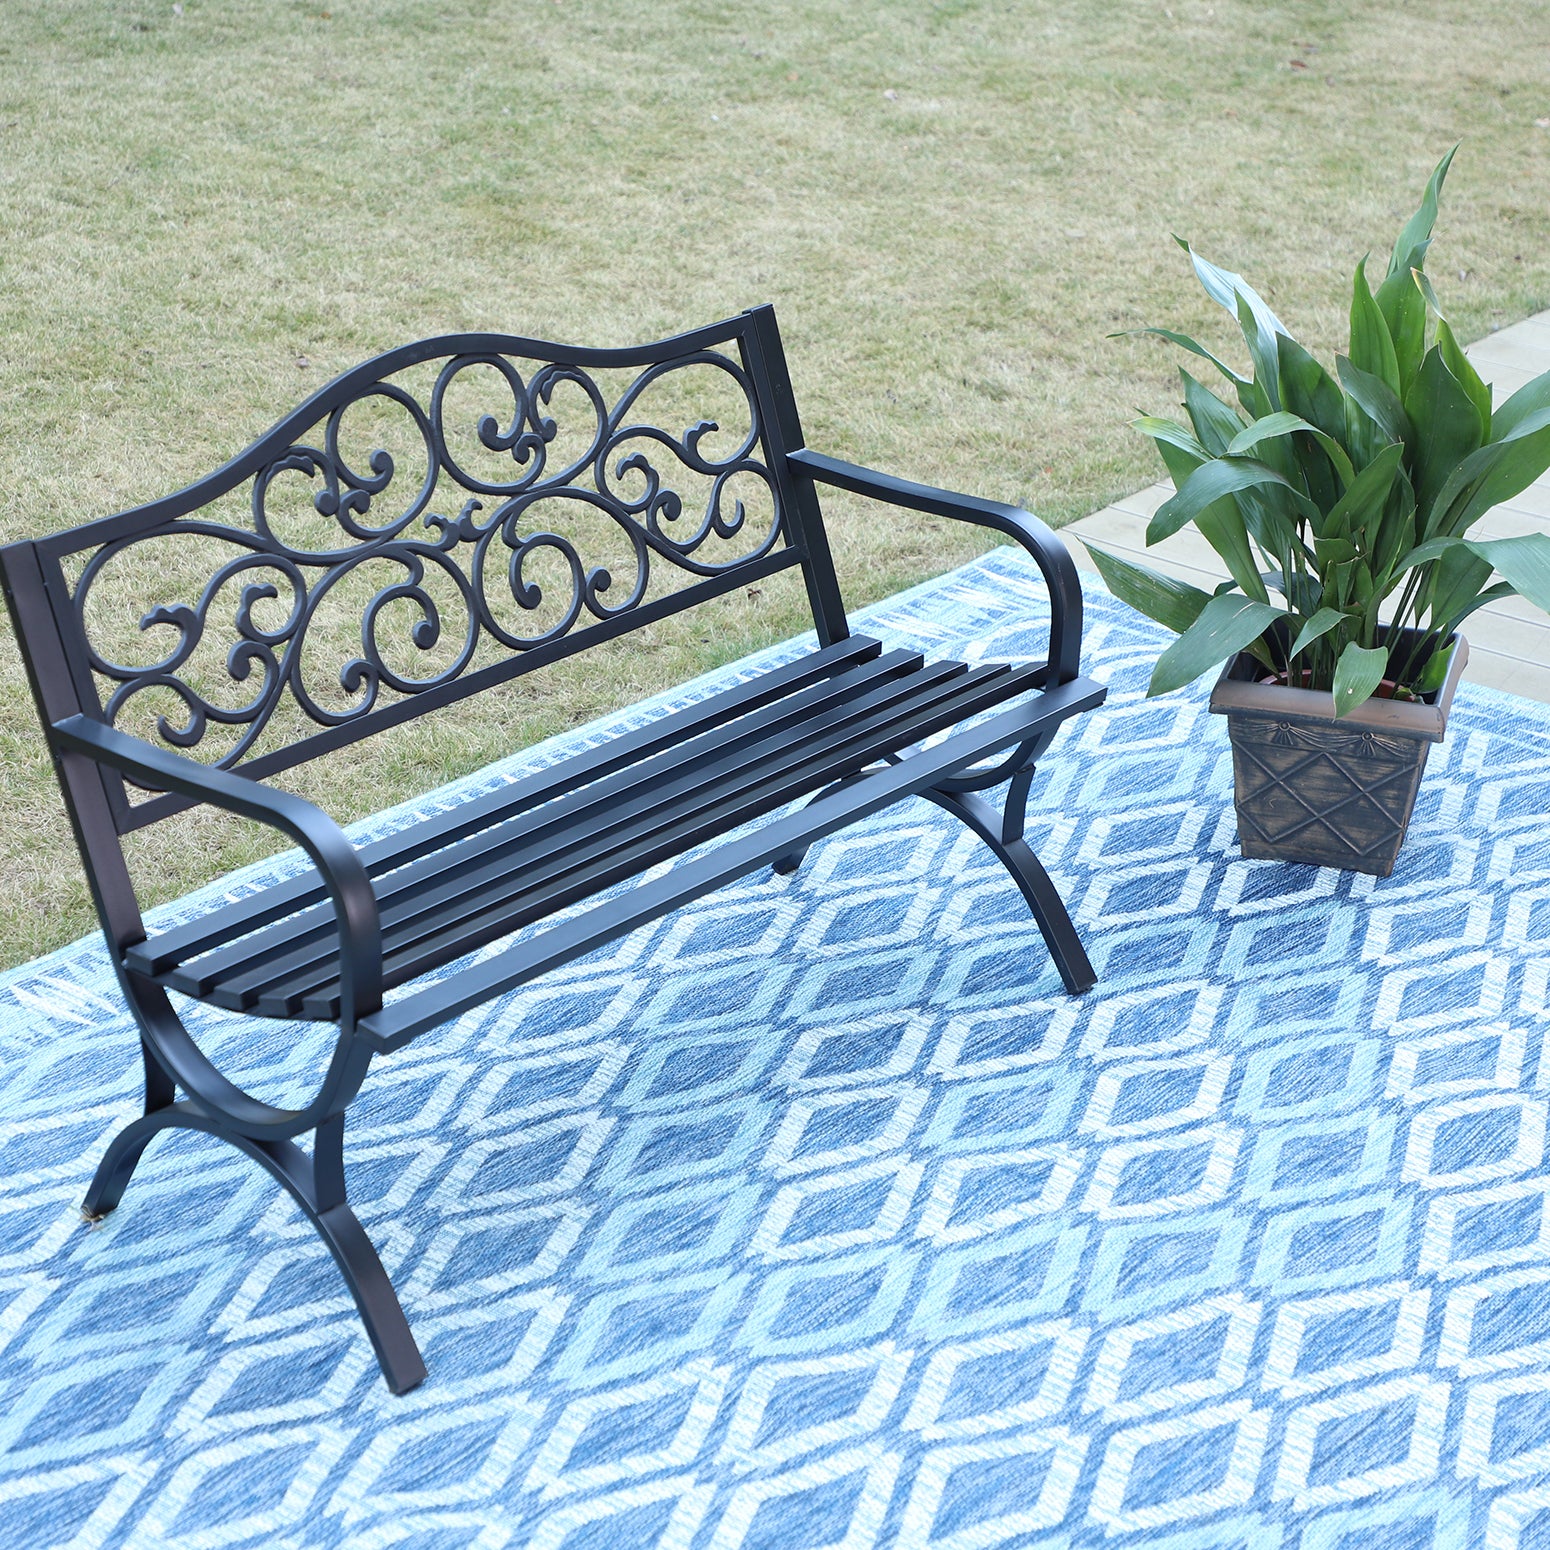 MFSTUDIO 50 Inch Cast Iron Steel Frame Flower Pattern Garden Bench